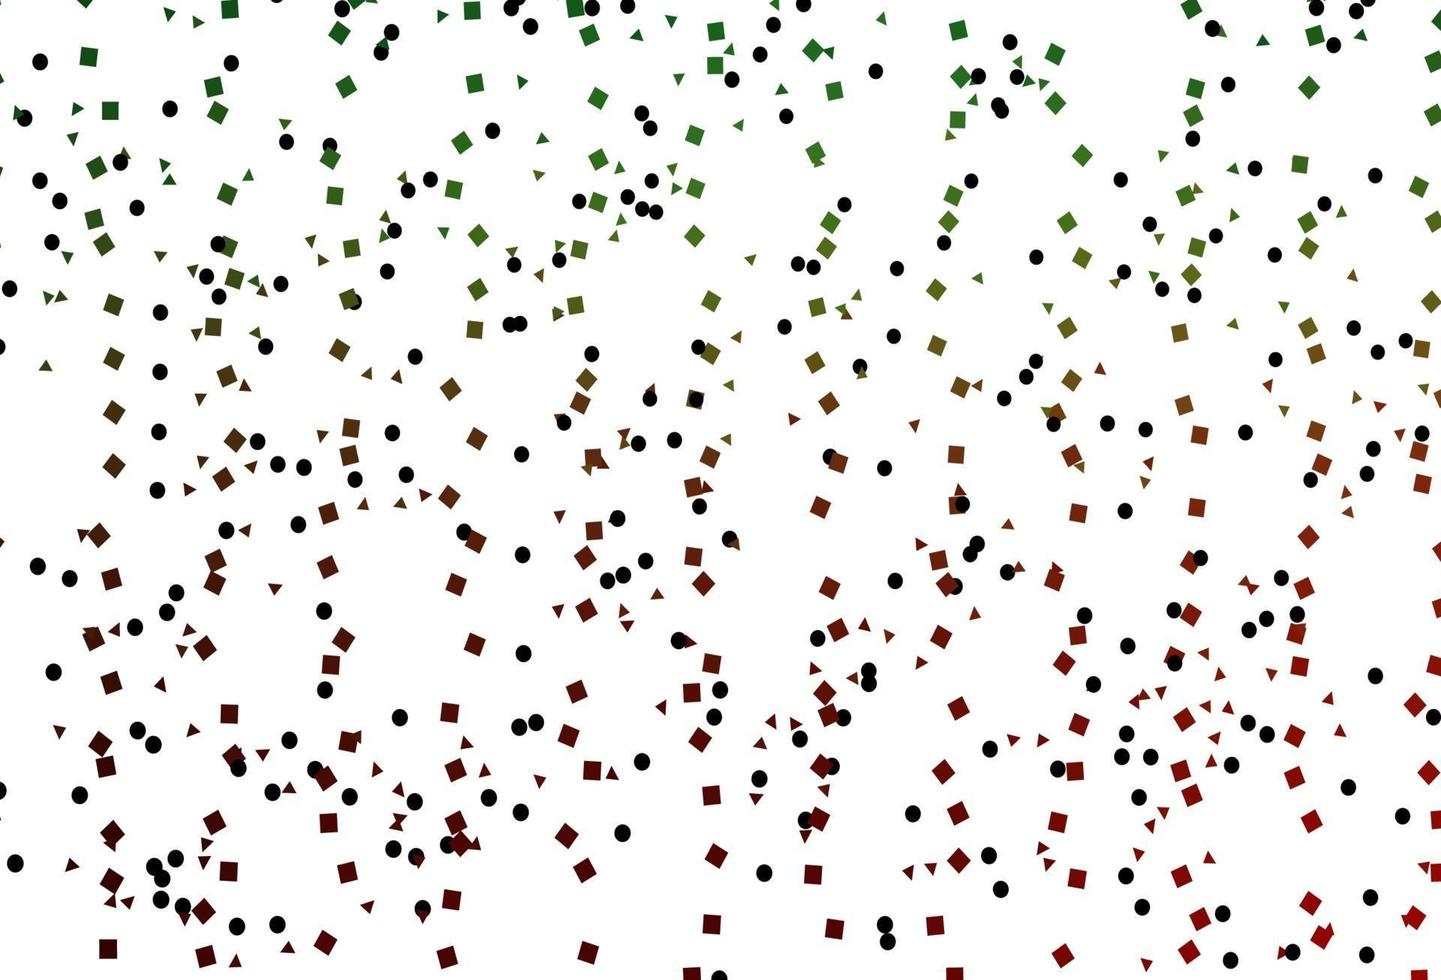 capa de vetor verde e vermelho claro em estilo poligonal com círculos.